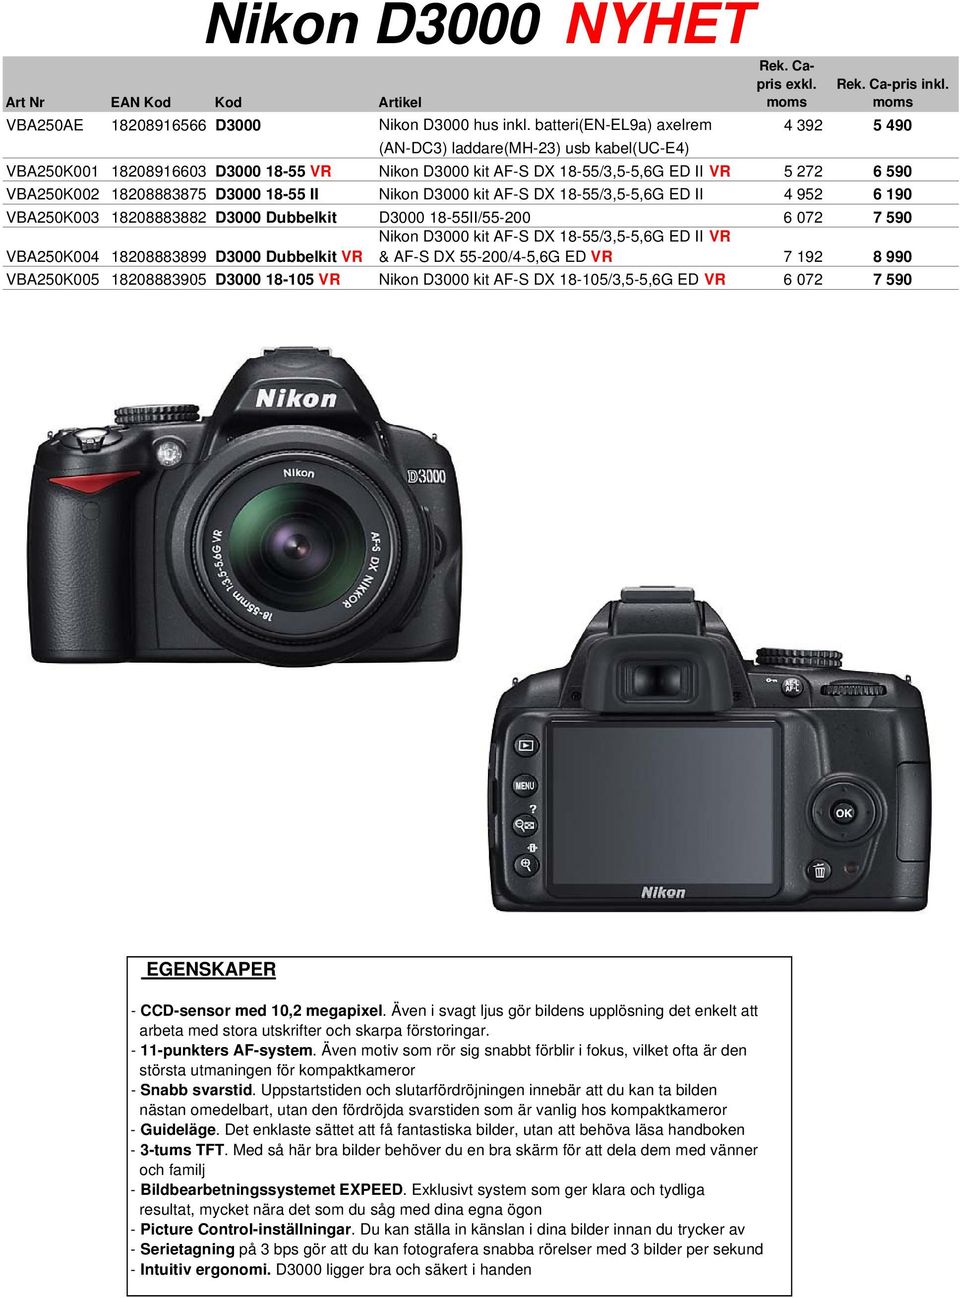 D3000 18-55 II Nikon D3000 kit AF-S DX 18-55/3,5-5,6G ED II 4 952 6 190 VBA250K003 18208883882 D3000 Dubbelkit D3000 18-55II/55-200 6 072 7 590 VBA250K004 18208883899 D3000 Dubbelkit VR Nikon D3000